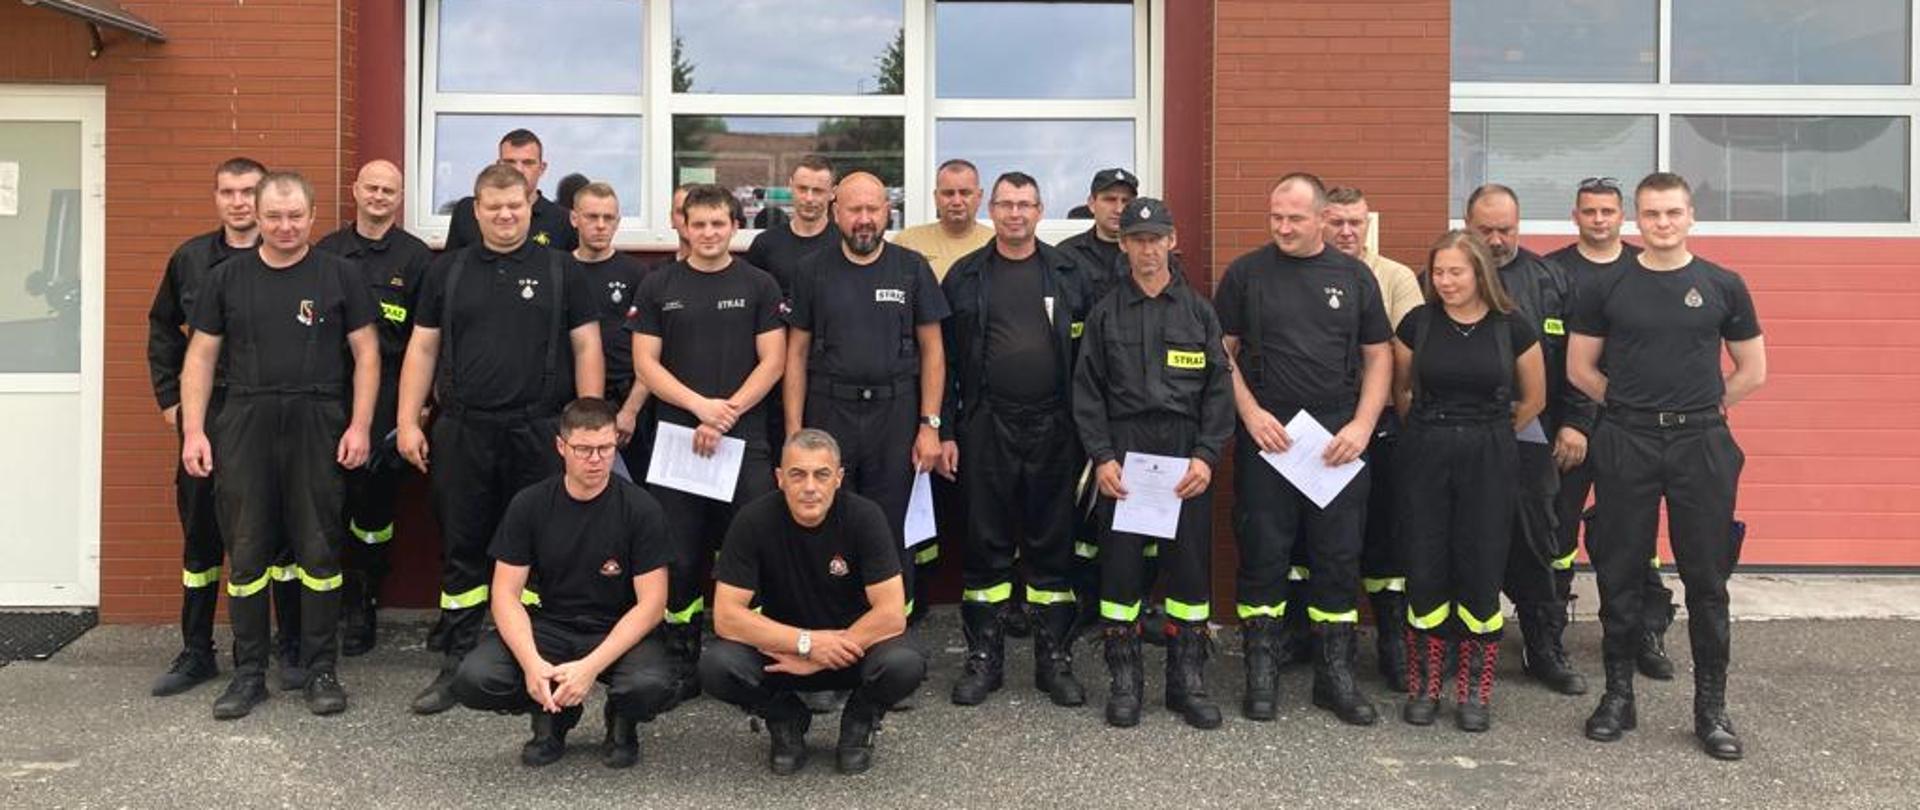 Na zdjęciu widać strażaków po ukończonym szkoleniu dowódców OSP, wraz z komisją egzaminacyjną.